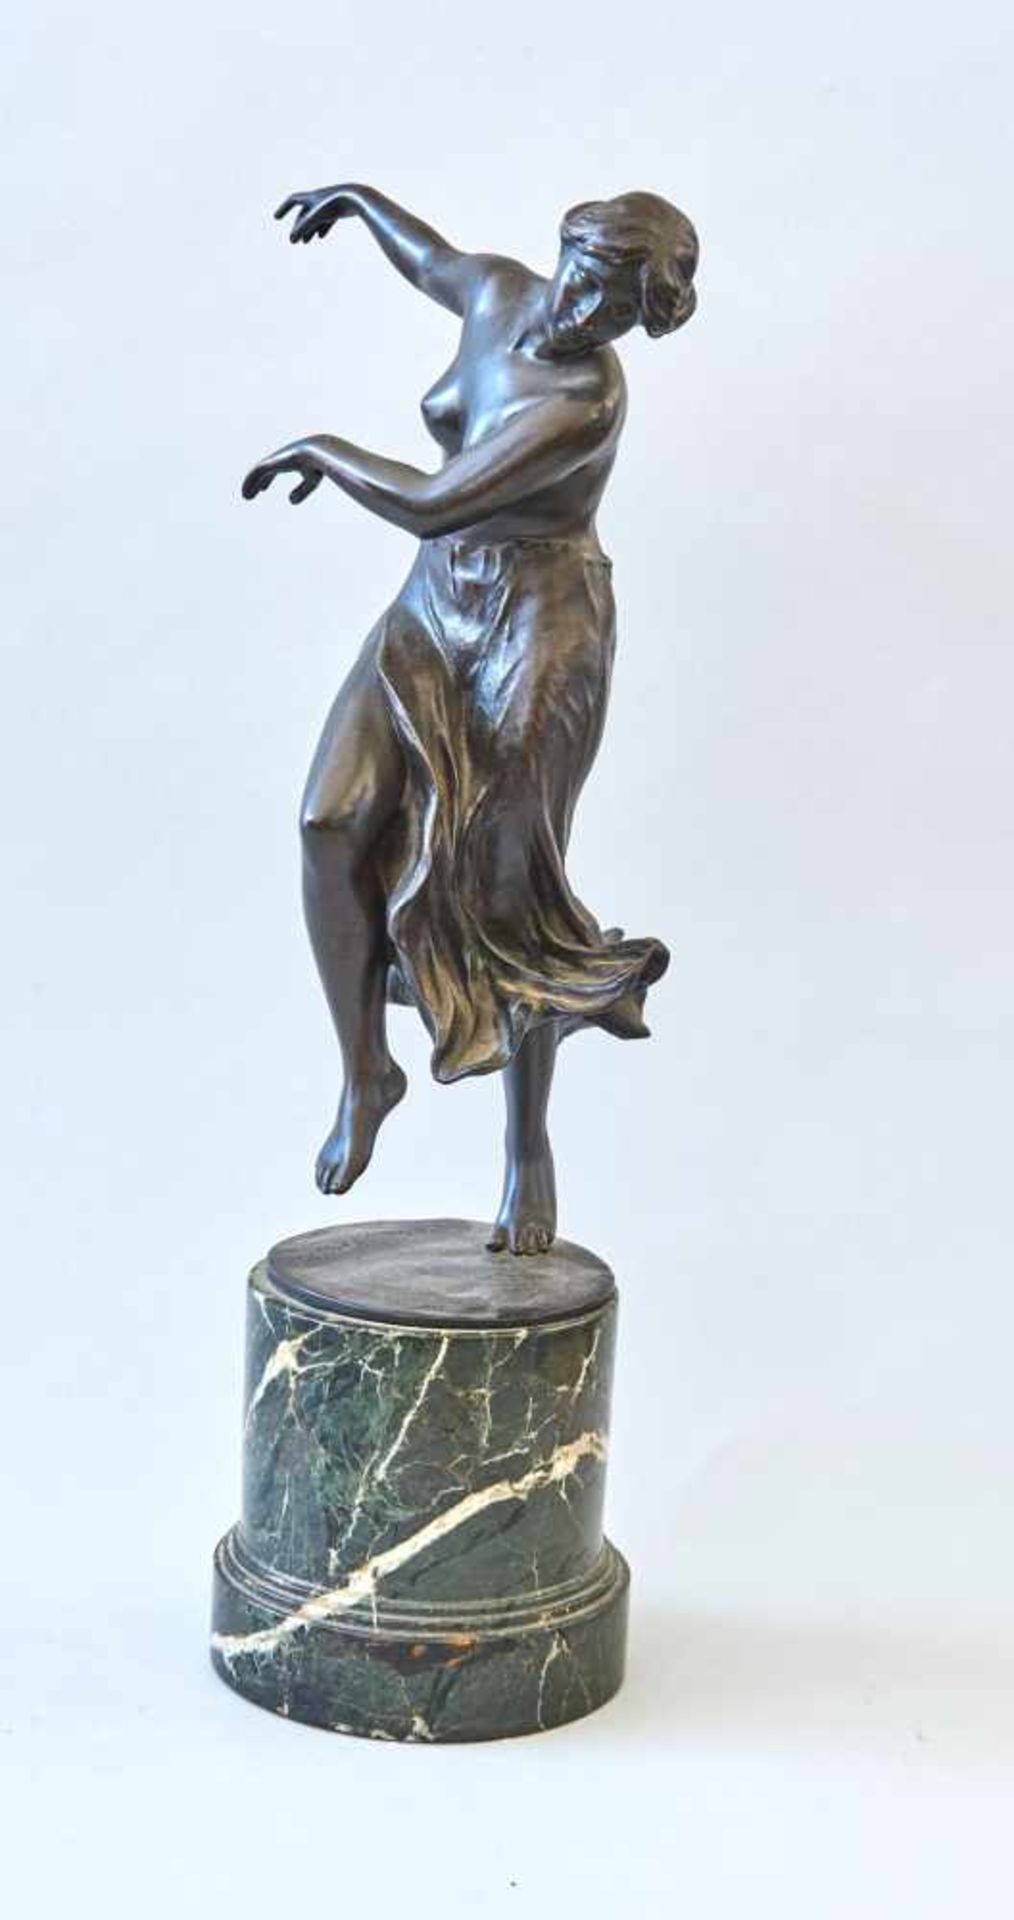 TänzerinErich Schmidt-Kestner, (1877-1941)Bronze dunkel patiniert, auf Marmorsockel, auf der Plinthe